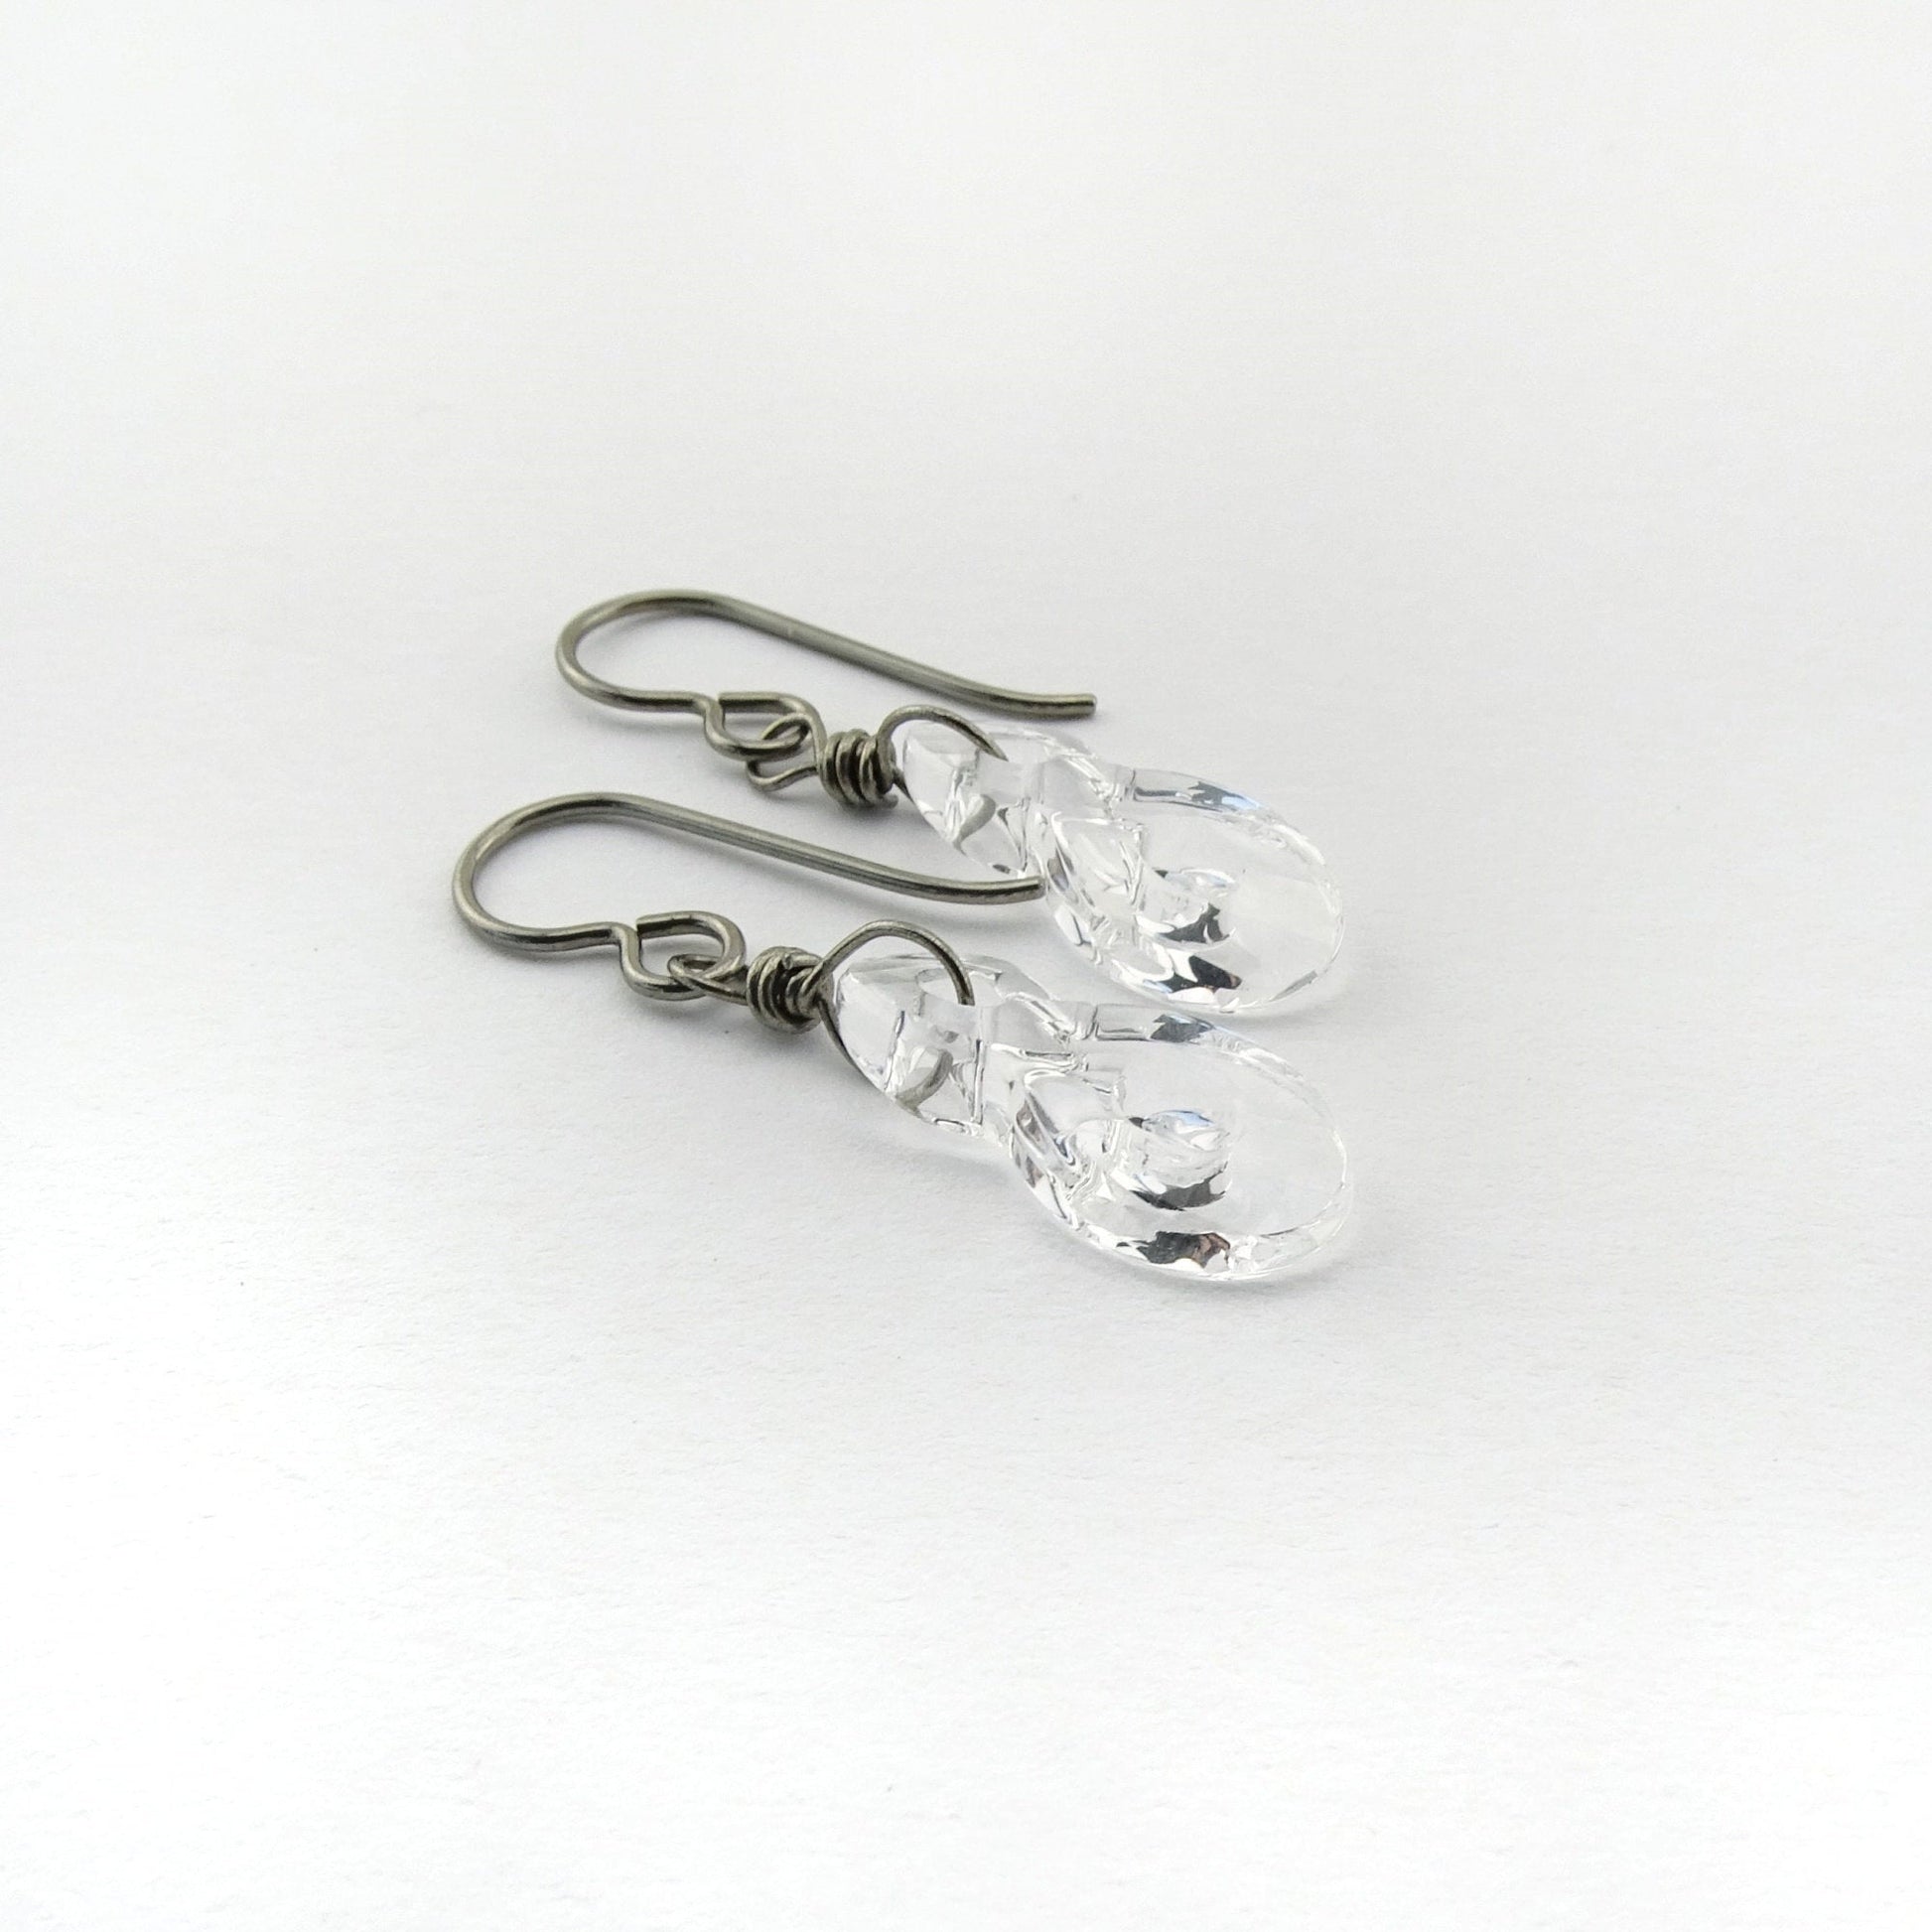 Clear Crystal Infinity Symbol Titanium Earrings, Swarovski Eternity Earrings for Sensitive Ears, Nickel Free Hypoallergenic Niobium Earrings